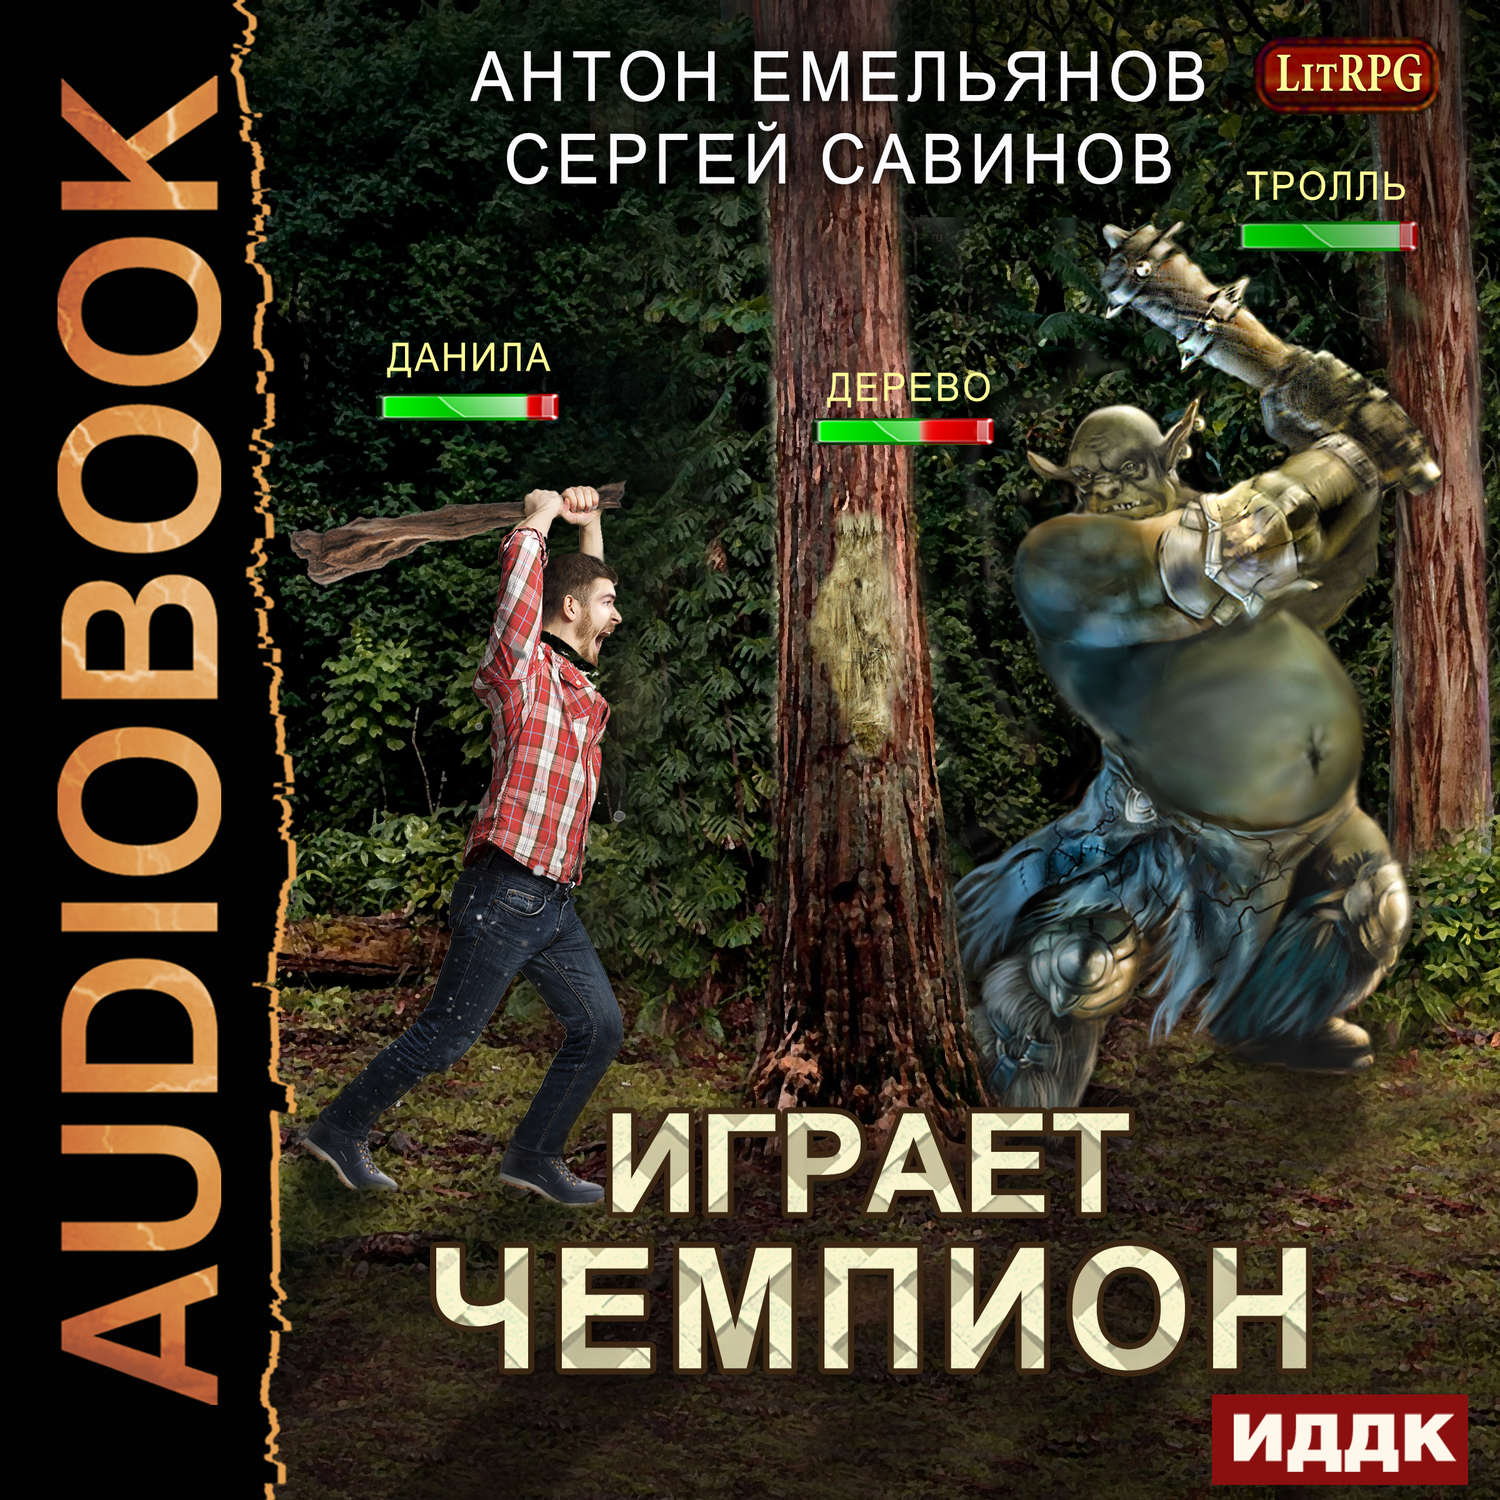 Книги антона емельянова и сергея савинова